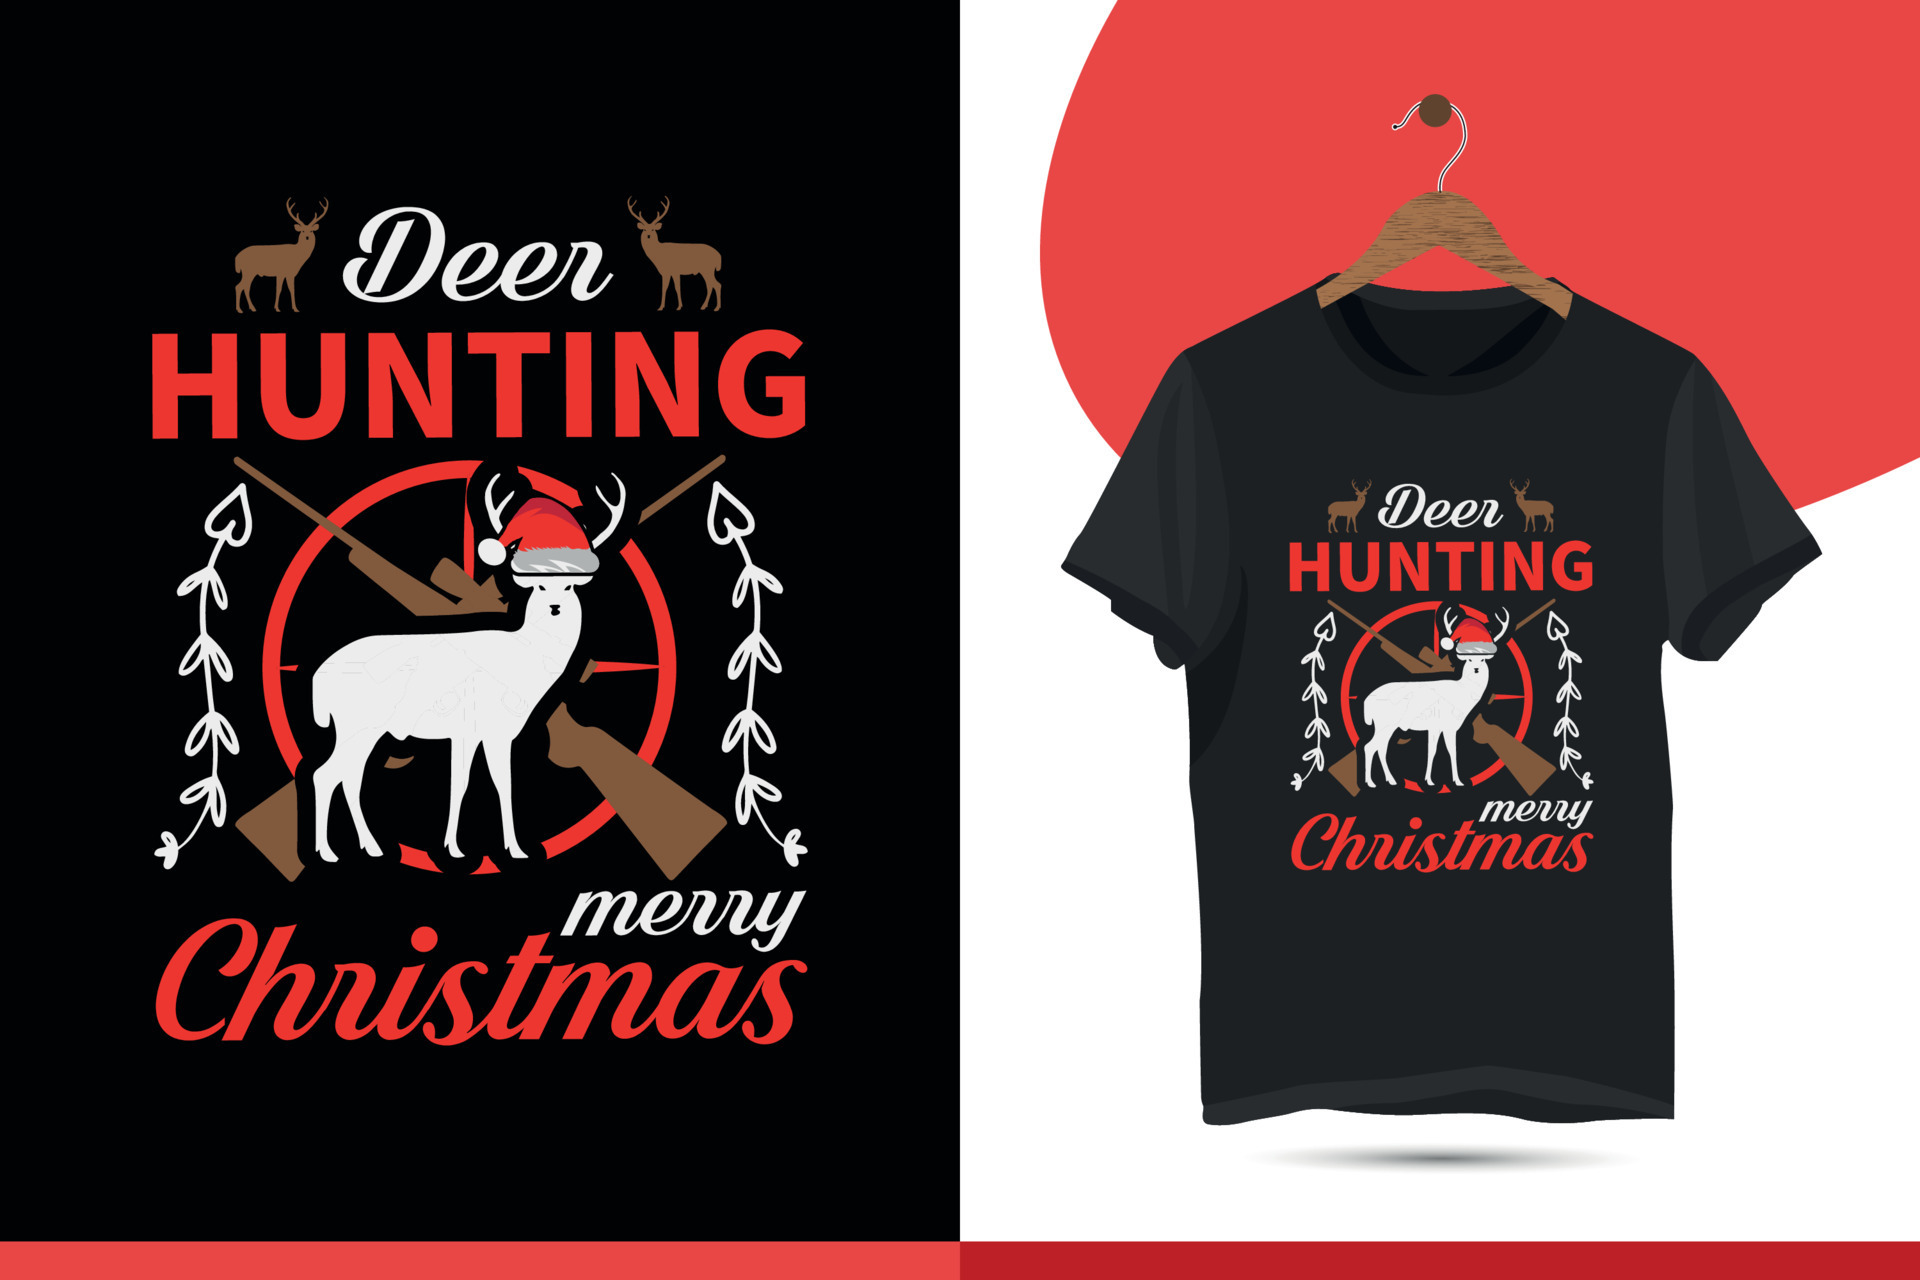 Deer hunting merry Christmas. Christmas T-shirt Design for Hunting